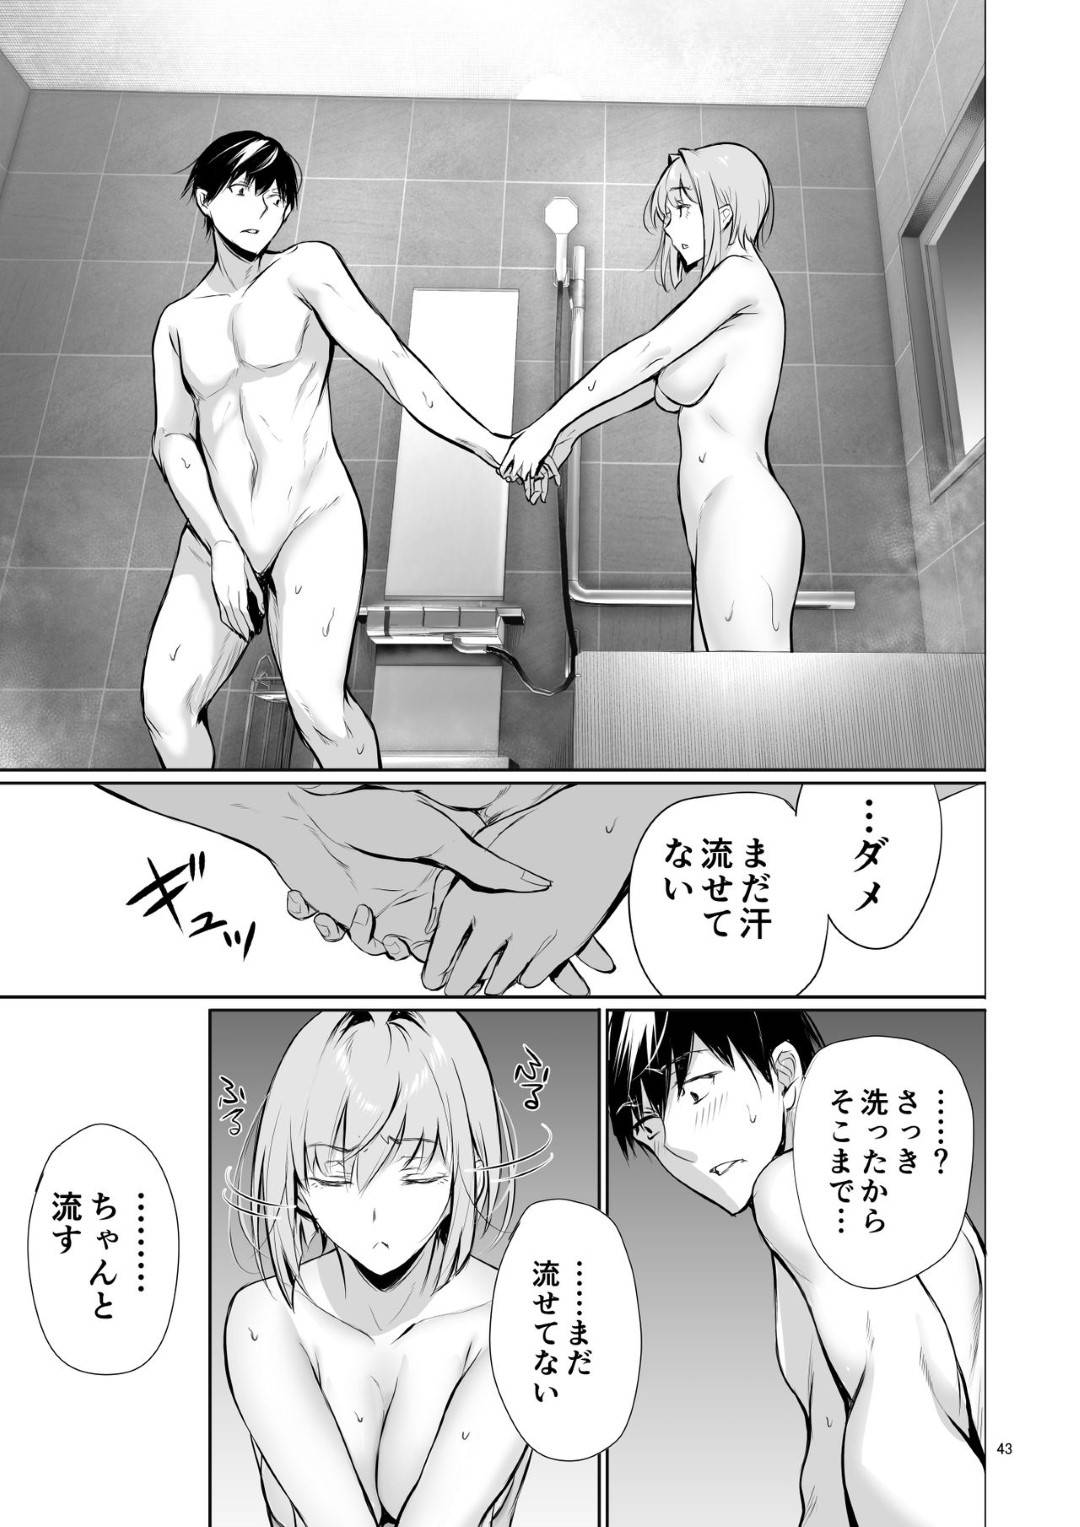 【エロ同人誌】日本の家にホームステイ中のドイツ娘...同級生の男と一緒にお風呂入るのは当たり前だが、戸惑い勃起している姿を見て、お風呂の続きを部屋でヤル【オリジナル】